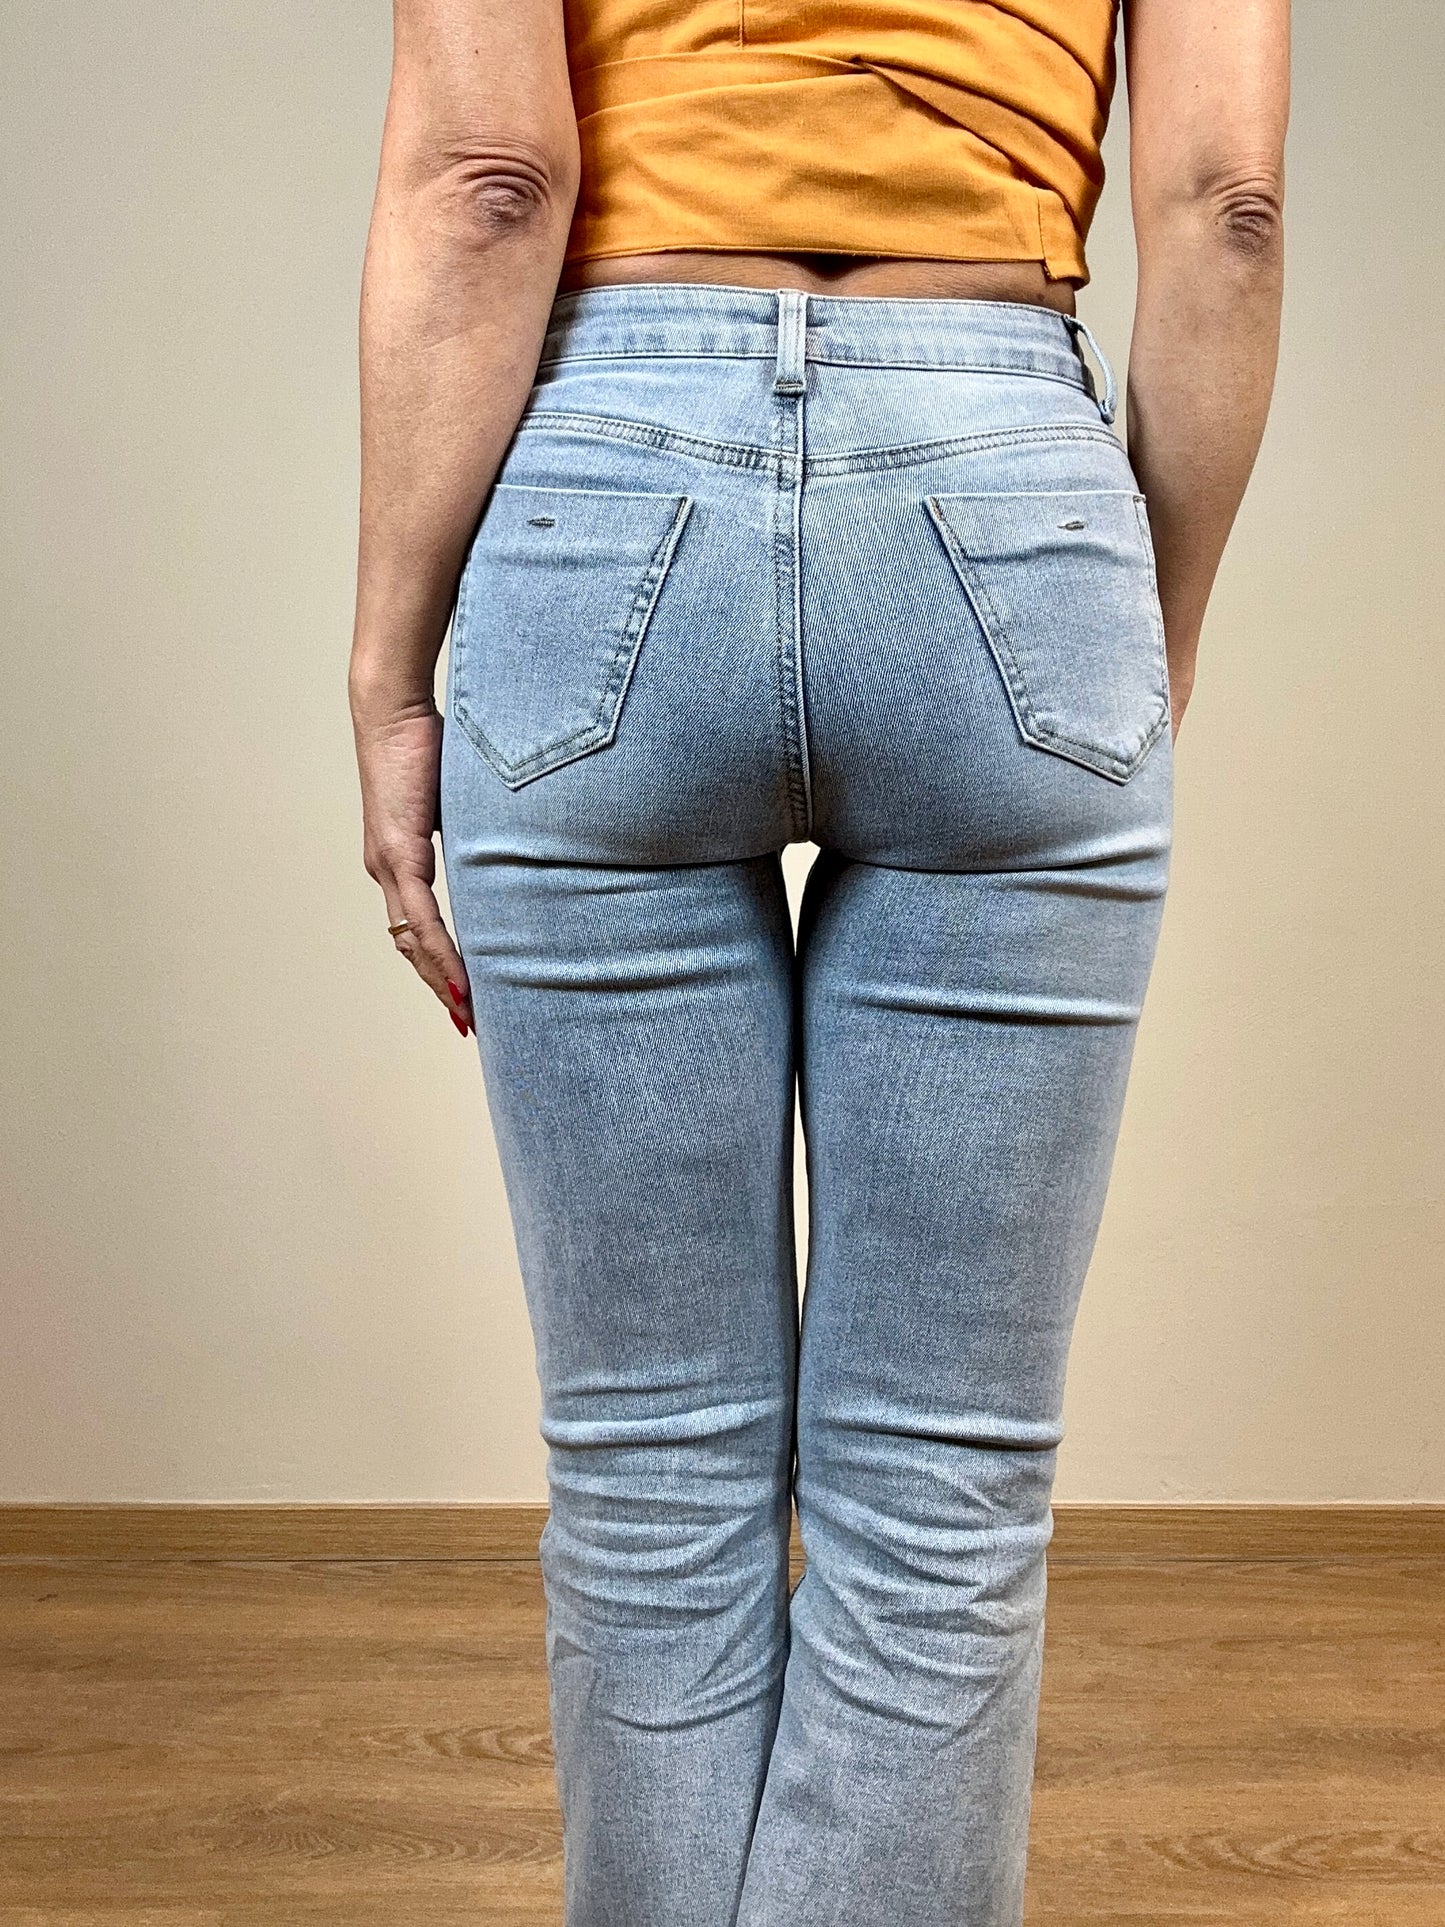 Jeans trombetta sfrangiato